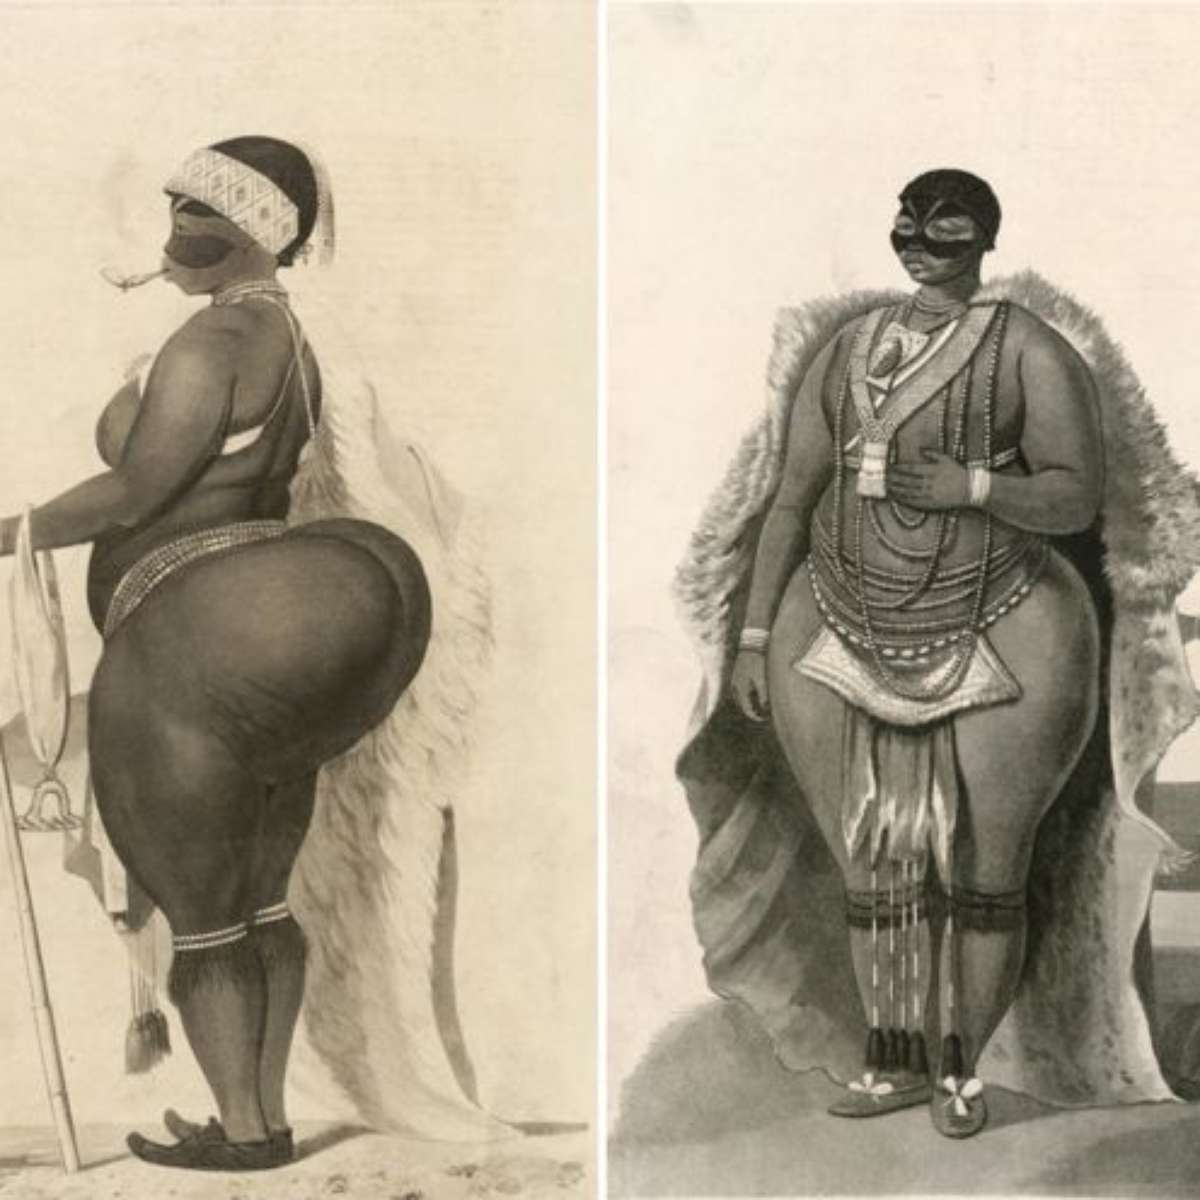 Conheça a história da africana que virou atração de circo foto